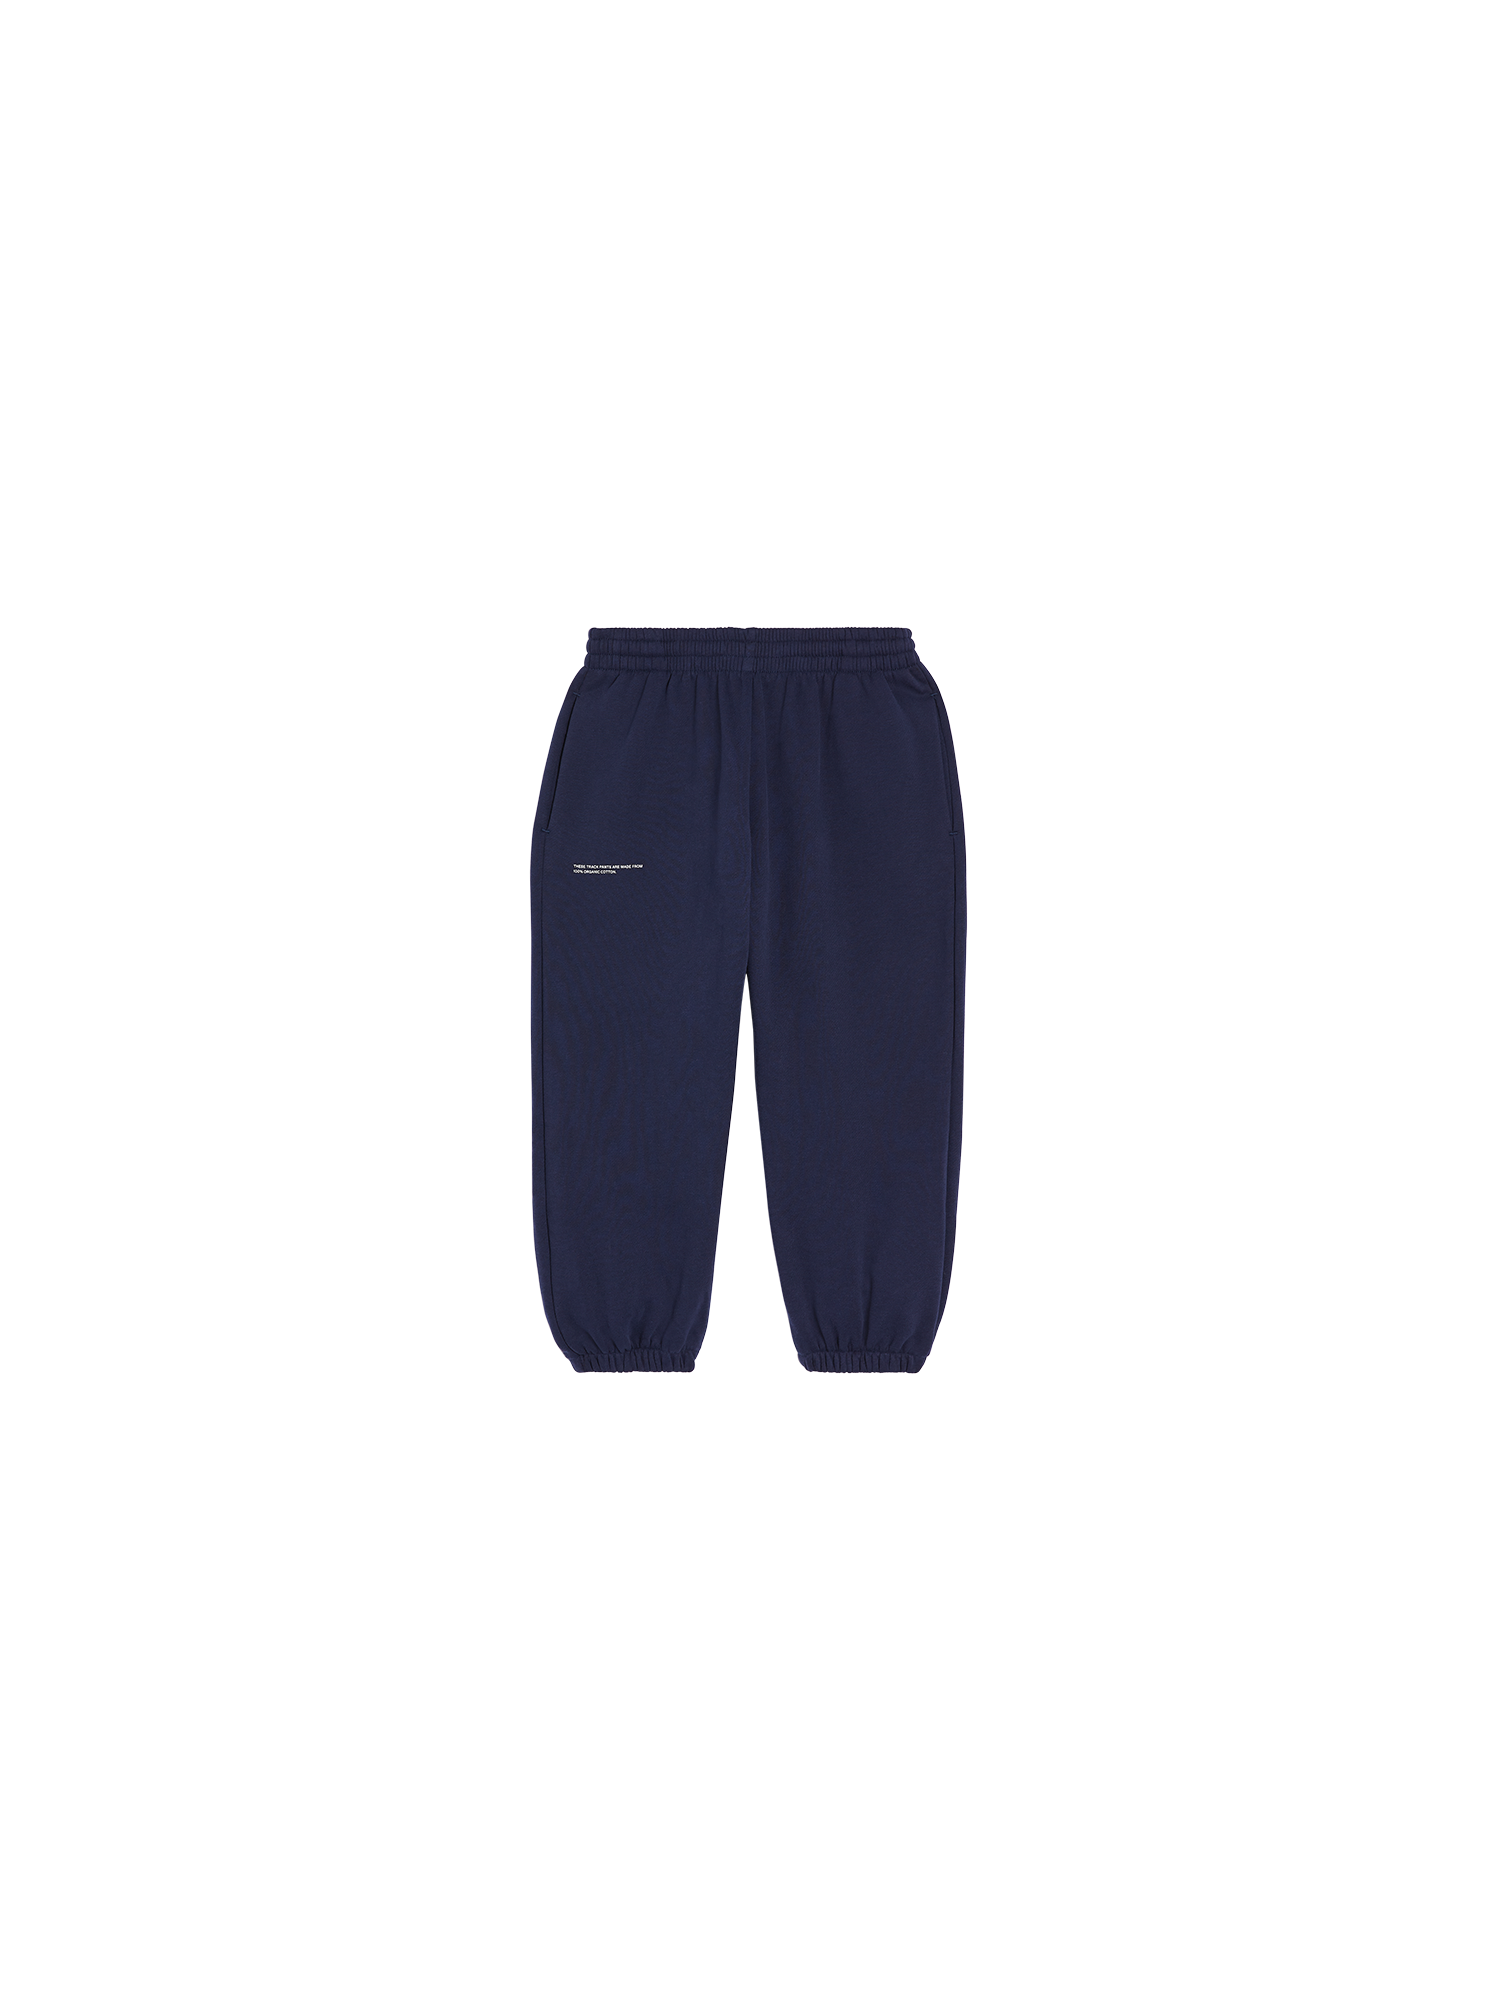 http://pangaia.com/cdn/shop/products/Kids-Organic-Cotton-Track-Pants-Navy-Blue-1.png?v=1662475319